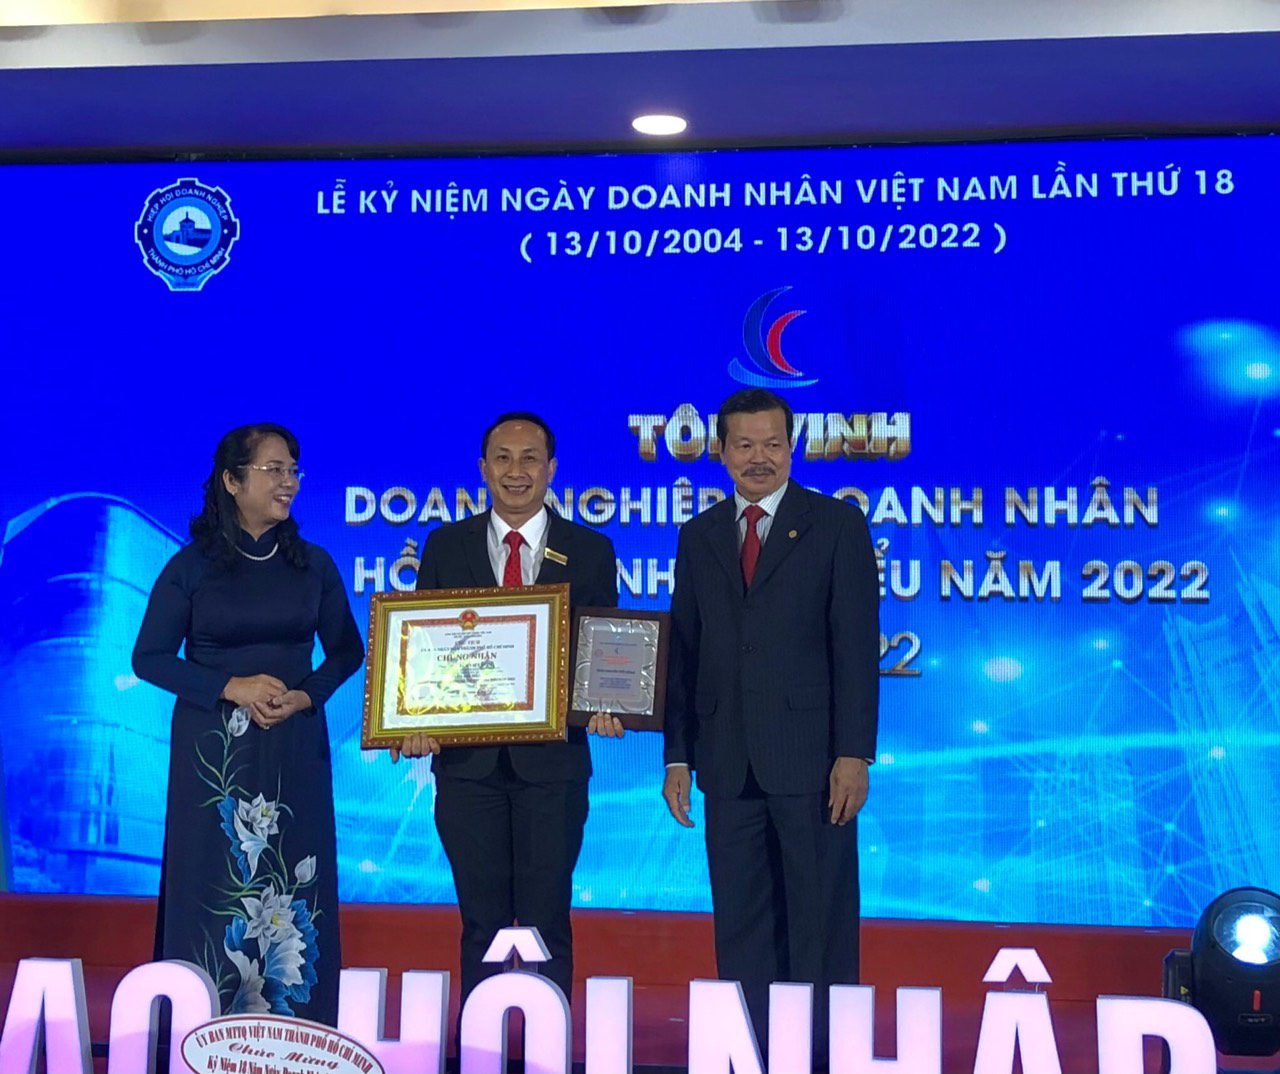 Ông Nguyễn Viết Hồng – TGĐ Vina CHG được trao chứng nhận “Doanh nhân tiêu biểu TP.HCM năm 2022” tại buổi lễ tôn vinh, khen thưởng nhân ngày Doanh nhân Việt Nam của UBND TP. HCM và HUBA tổ chức